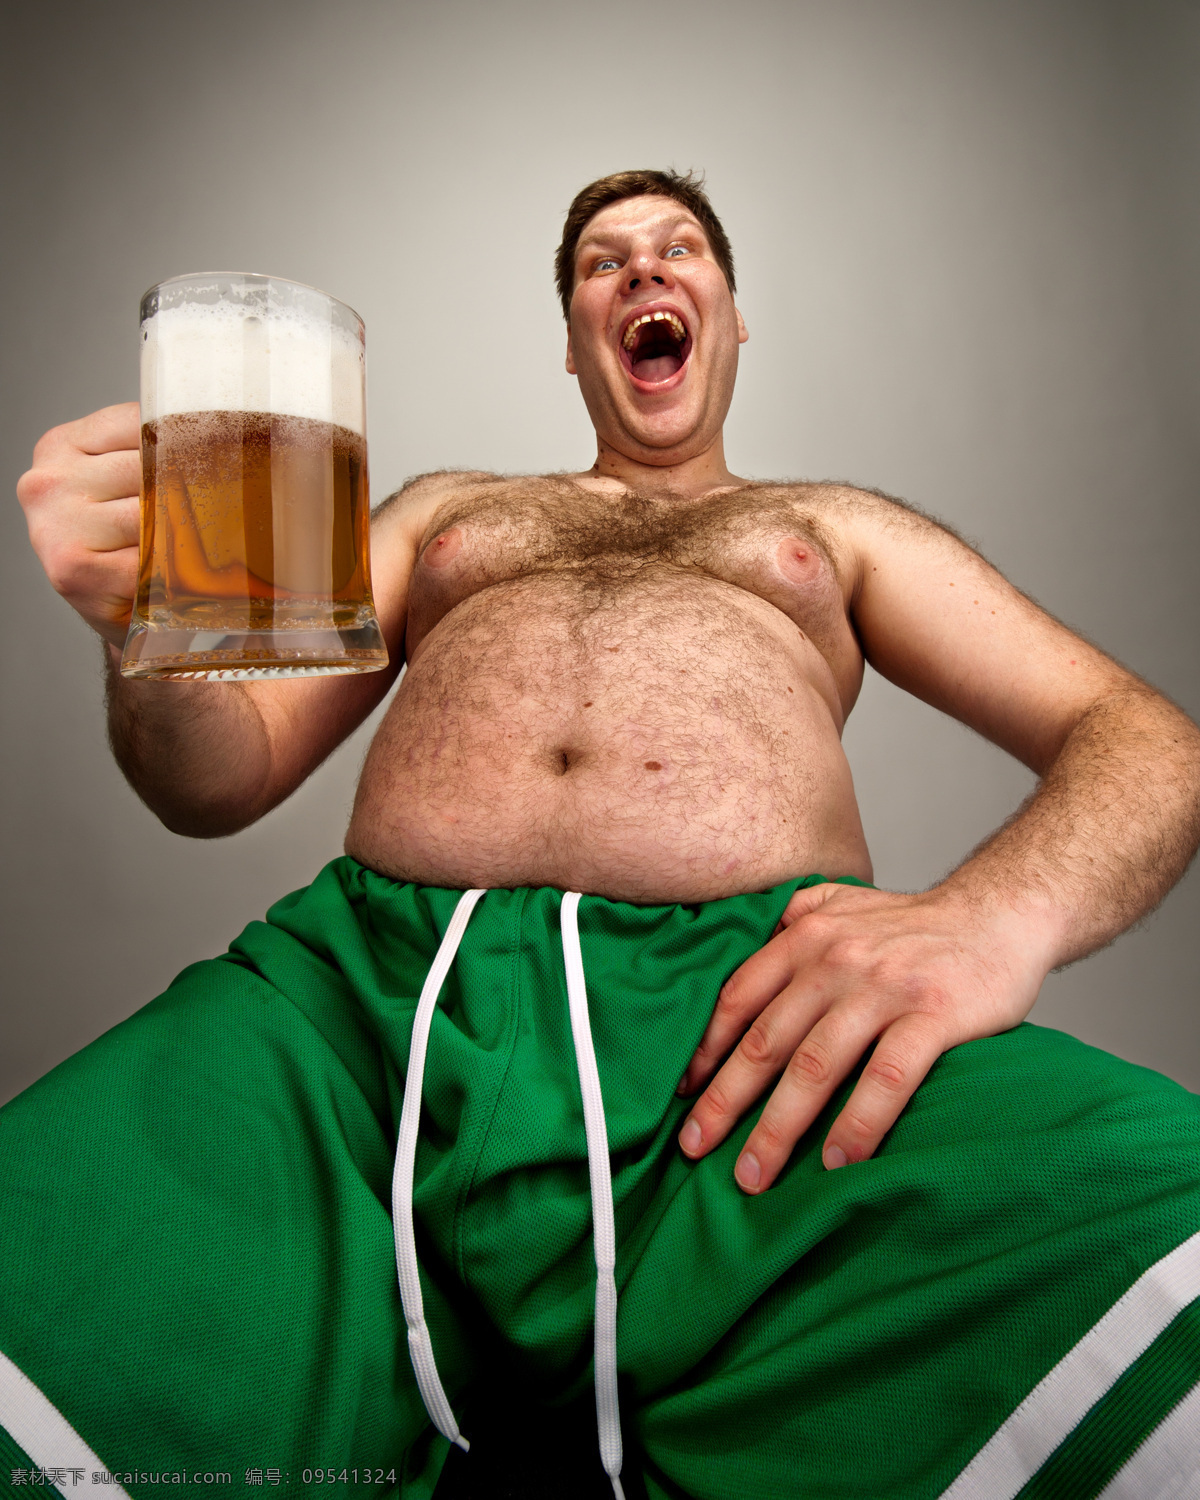 喝 啤酒 肥胖 男人 外国男性 胖子 啤酒肚 大肚子 赘肉 喝酒 男人图片 人物图片